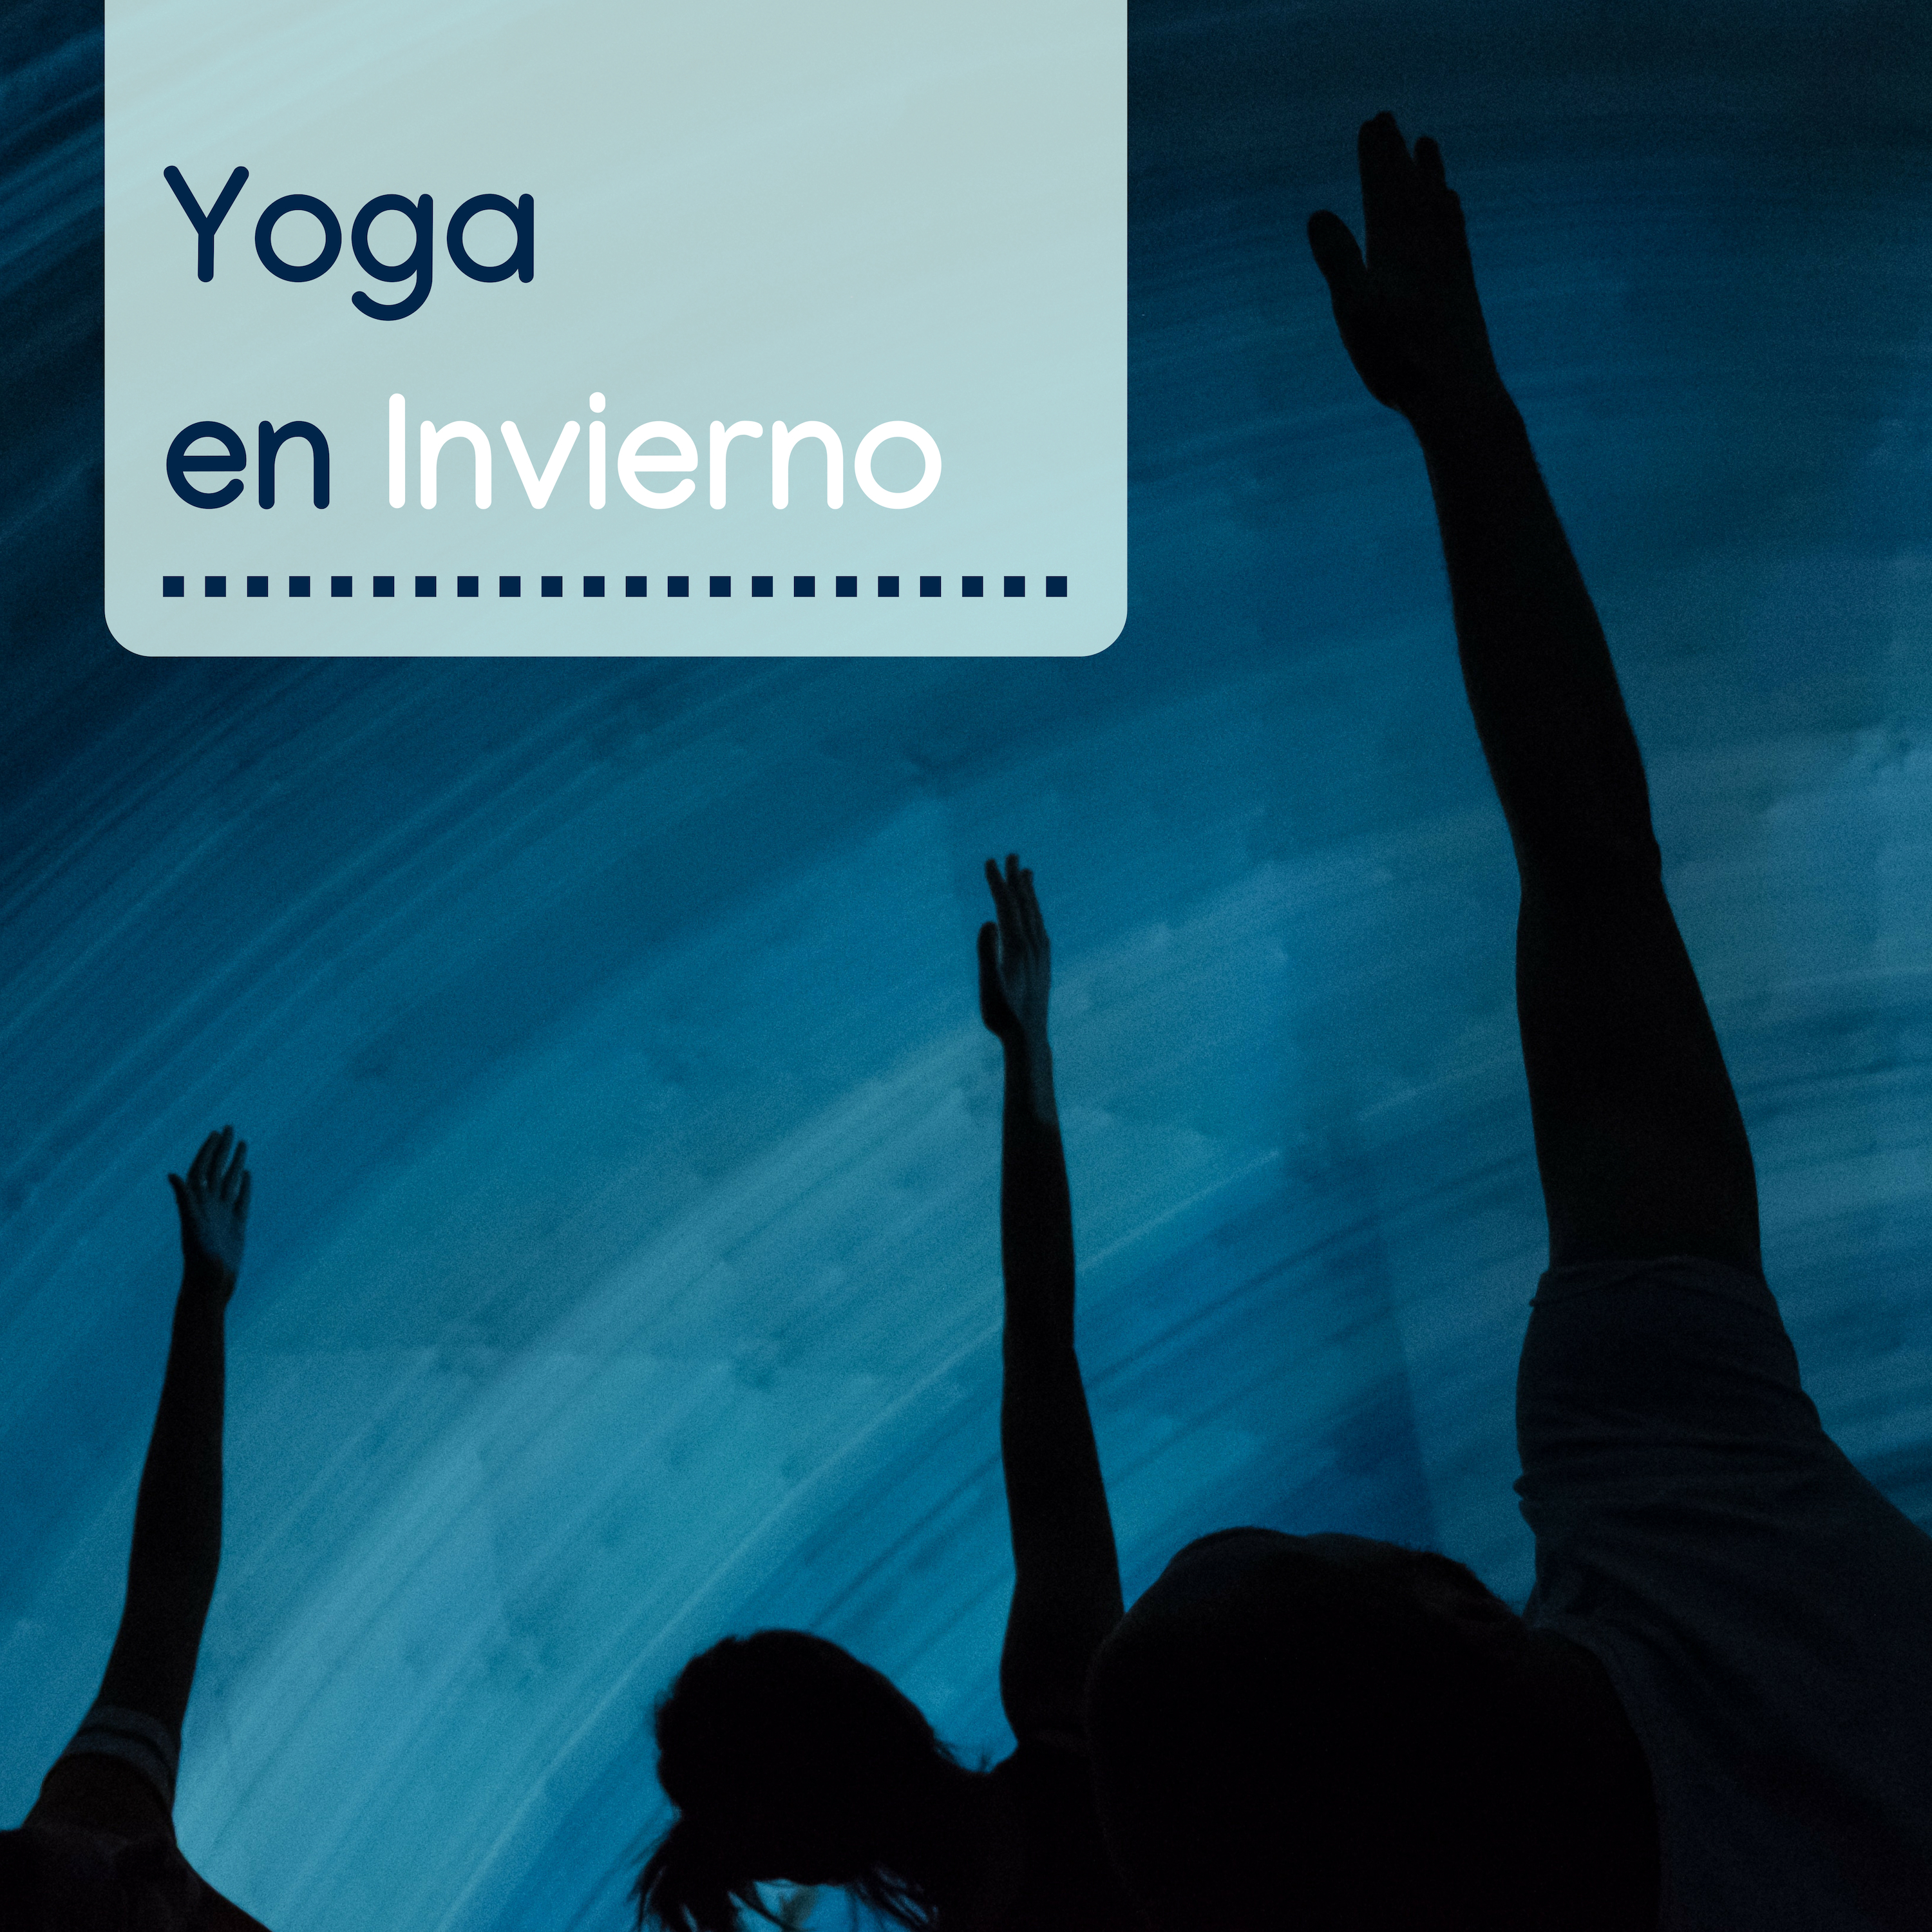 Yoga en Invierno - Fondo de Música para Clases de Yoga, Asanas y Momentos de Relajación y Meditación